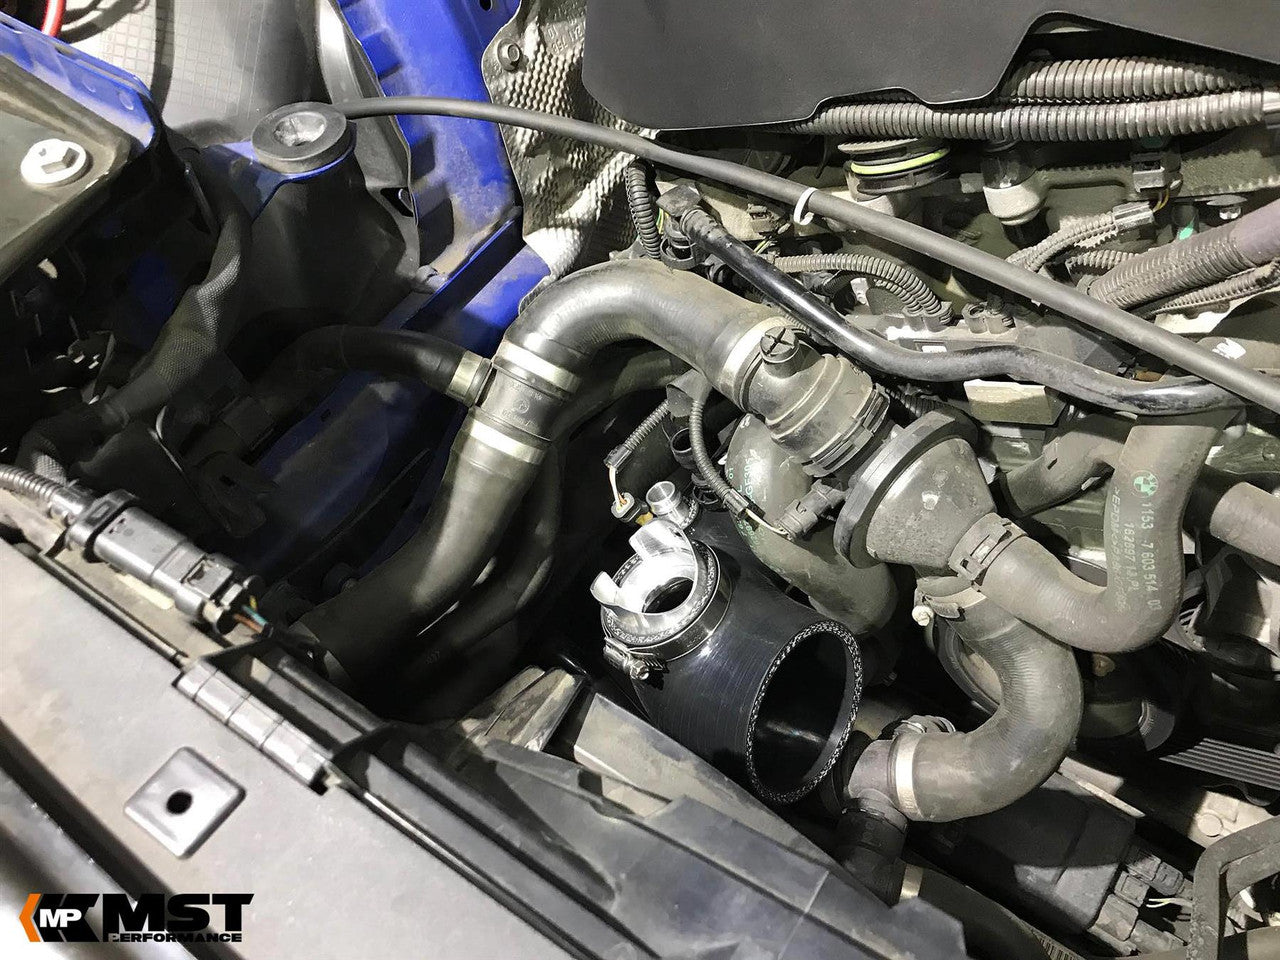 MST Performance Intake kit & Turbo Inlet Pipe - BMW 125i F20-F21, 220i-228i F22, 320i-328i F30, 420i-428i F32 (N20 Engine) 2011-16